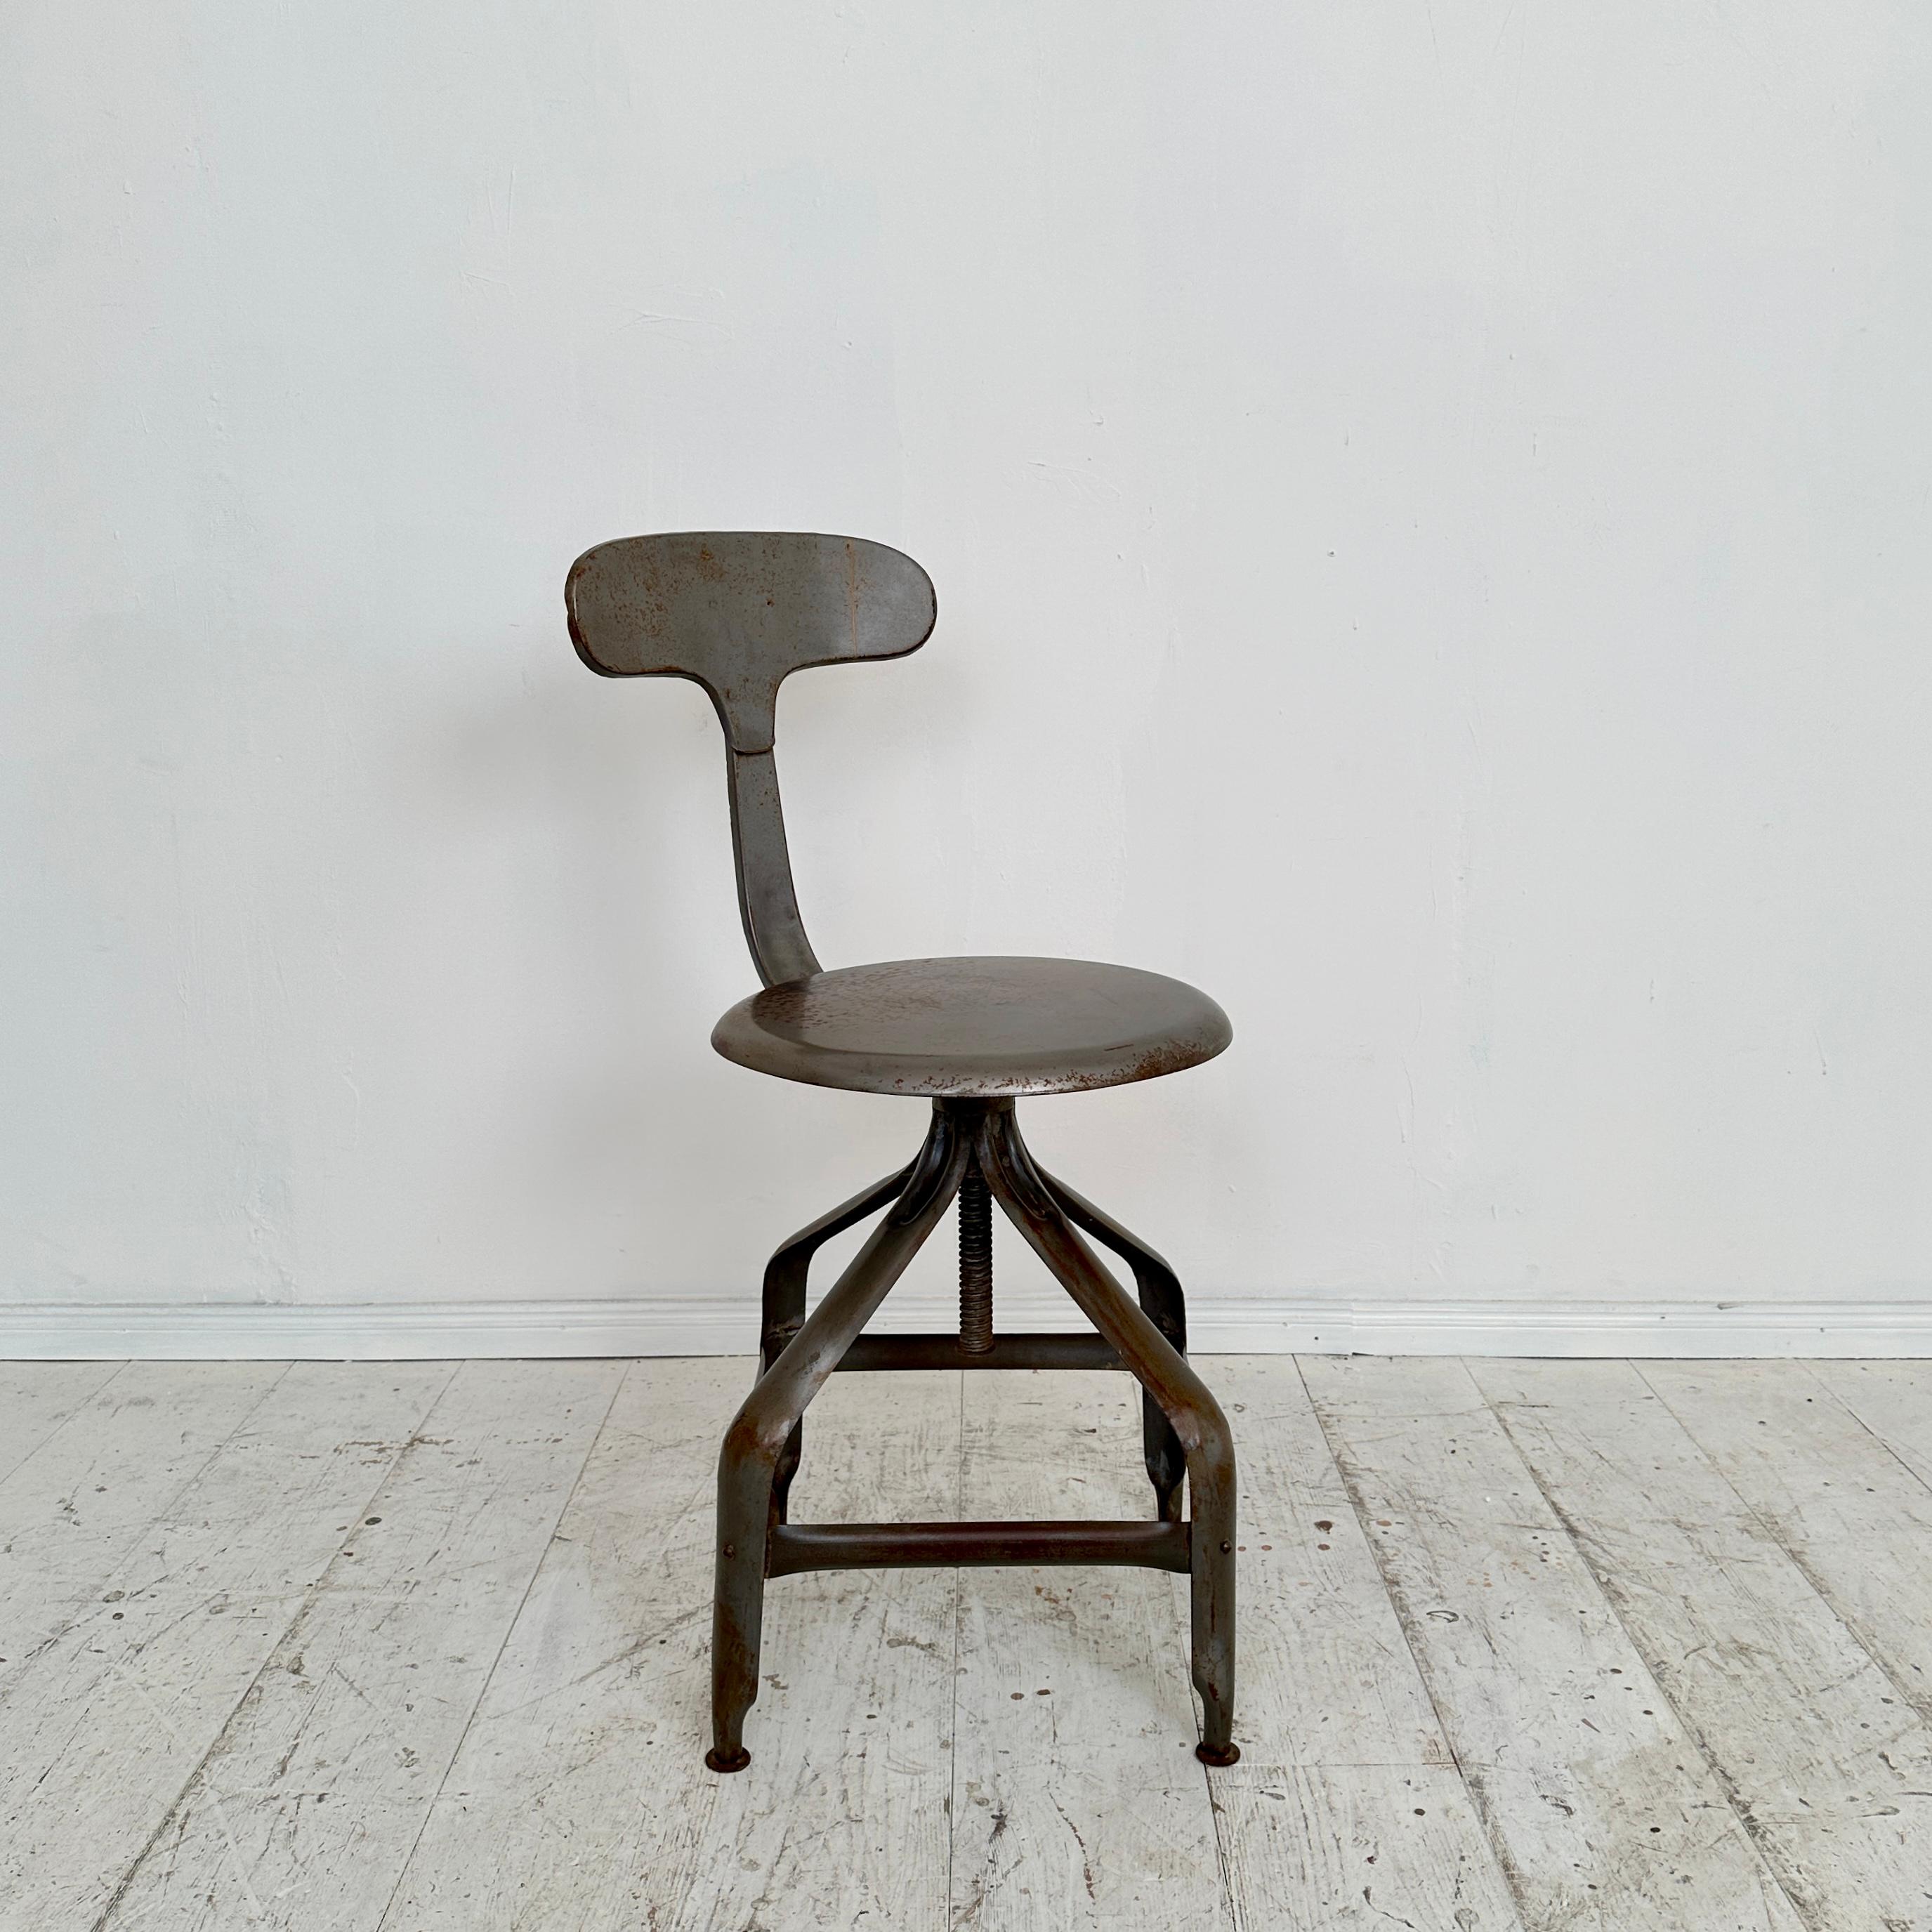 Remontez le temps jusqu'au charme robuste des années 1950 avec cette exceptionnelle chaise pivotante industrielle, véritable pièce unique. Entièrement fabriqué en métal, il incarne la durabilité et l'esthétique utilitaire de l'époque. La